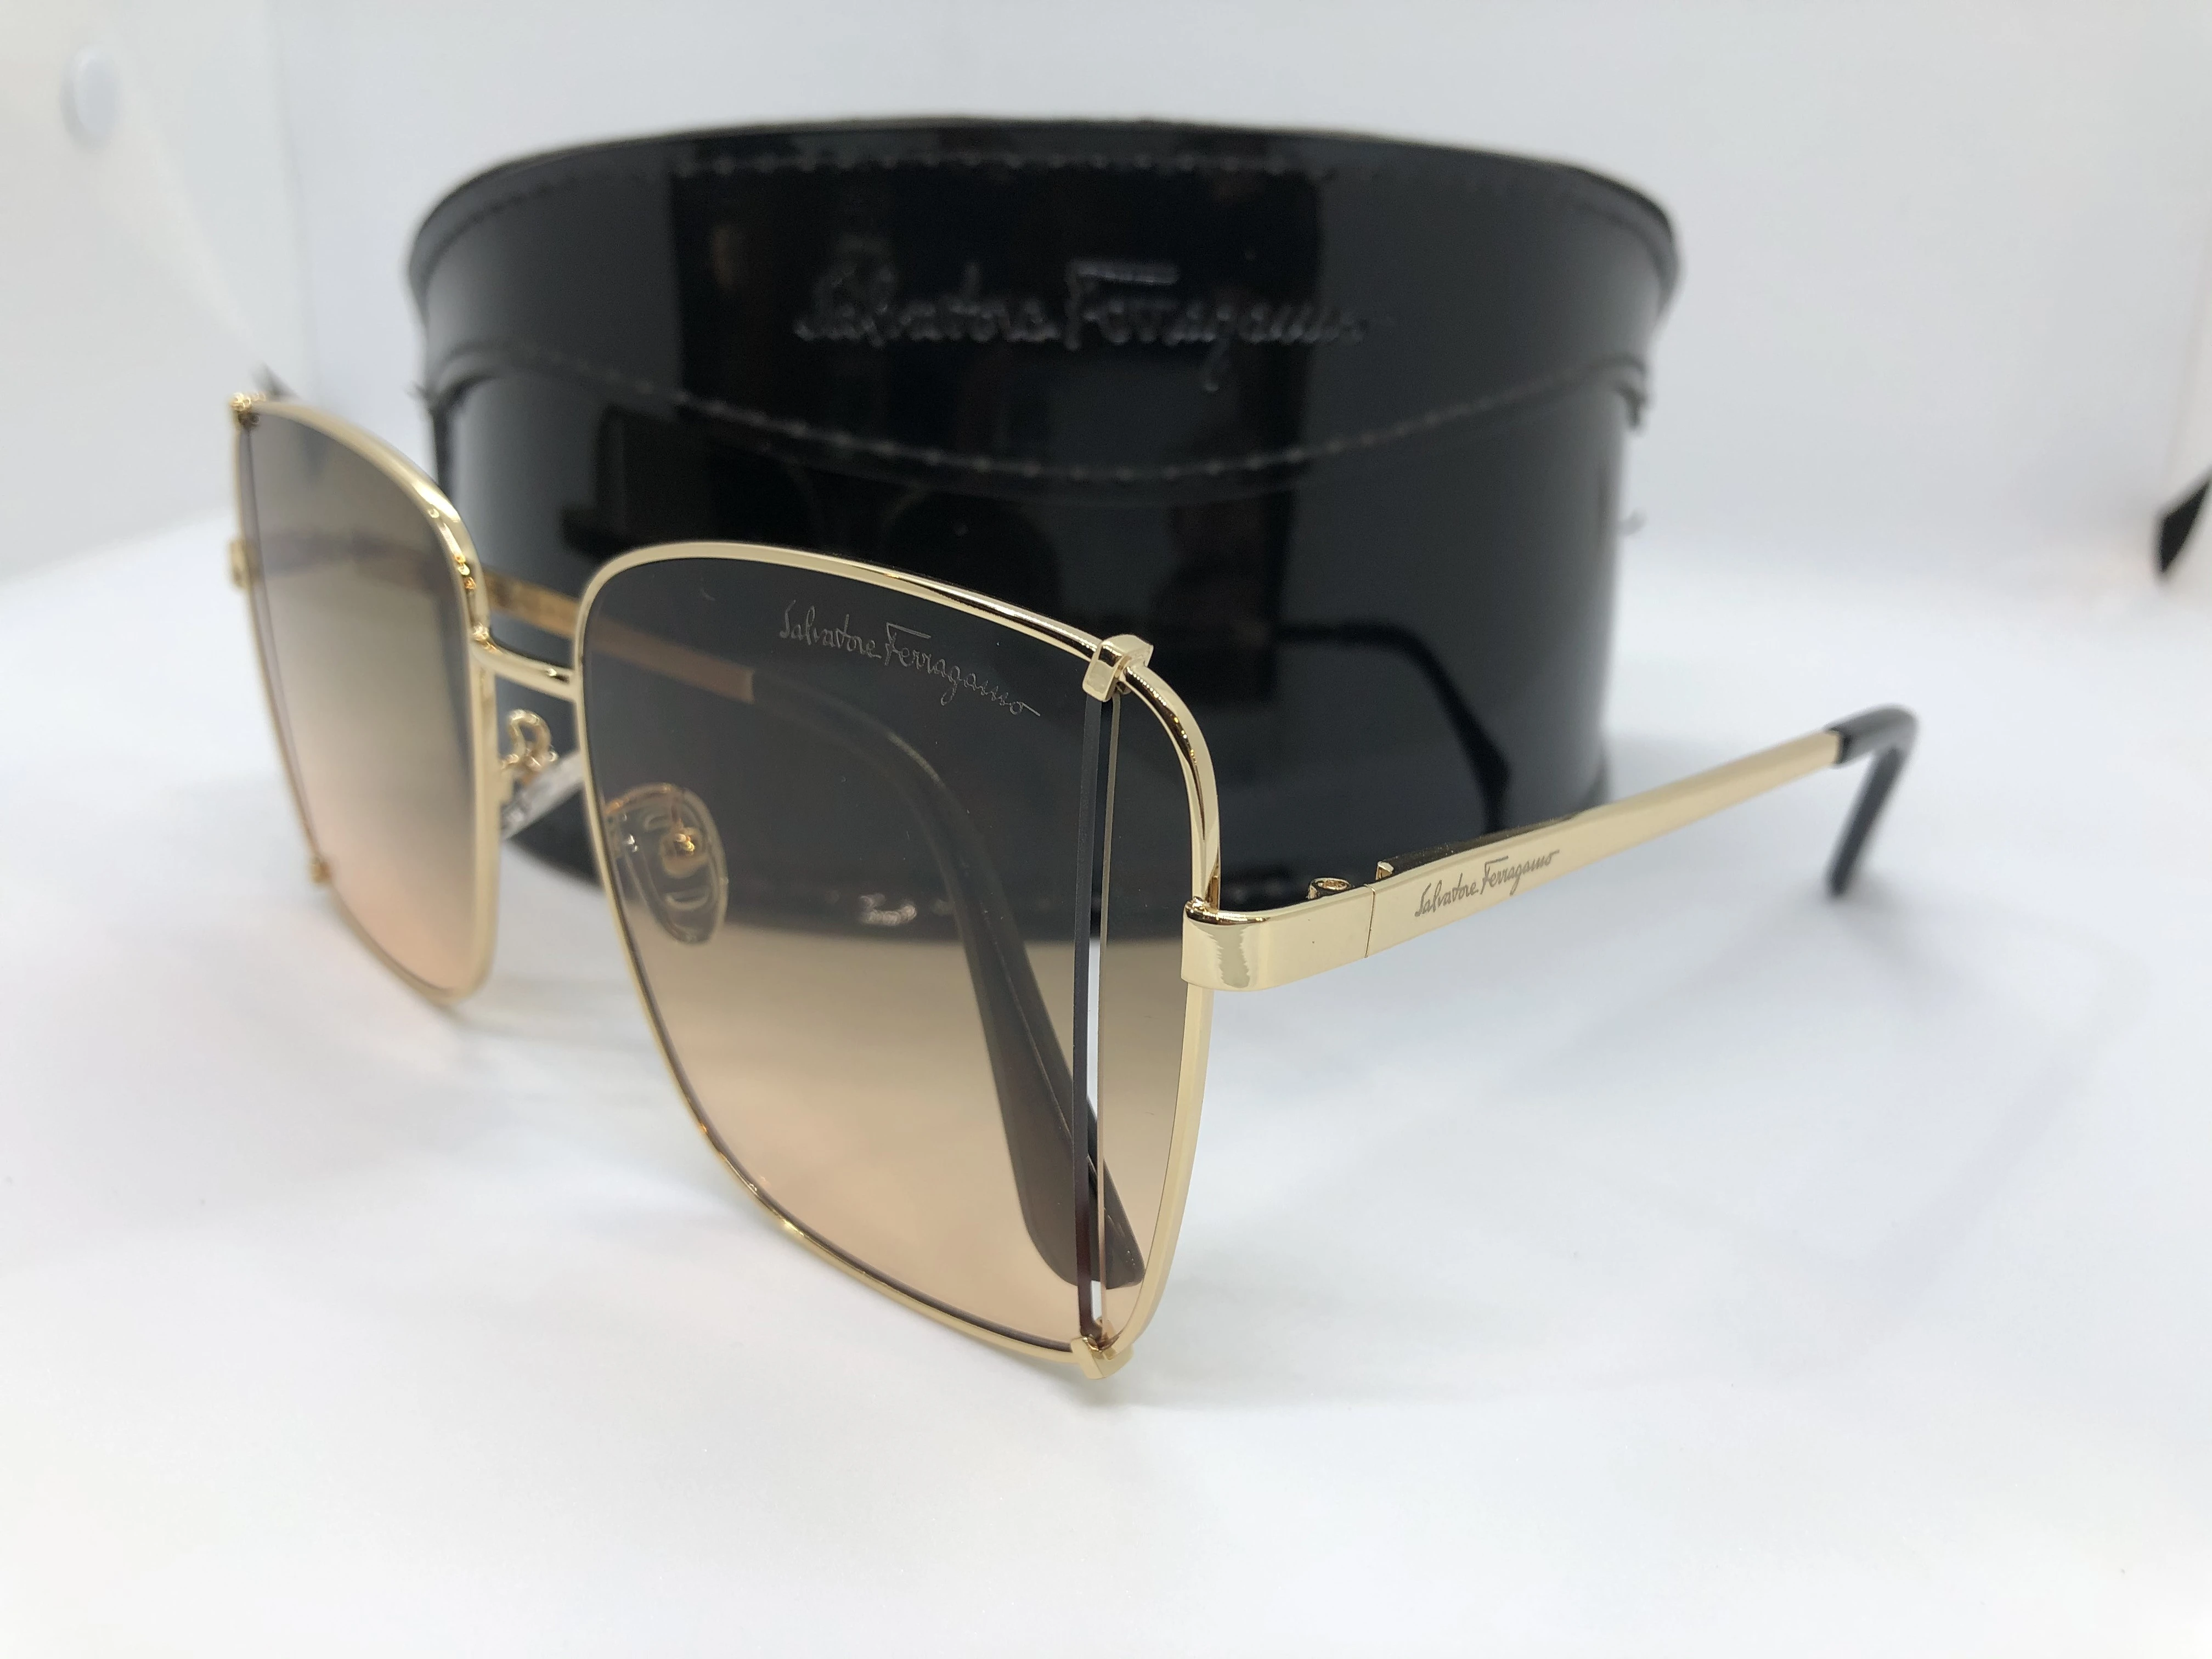 نظارة شمسية - من سلفاتوري فيراغامو -باطار معدن ذهبي - وعدسات ذهبي شفاف - وزراع ذهبي معدن - حريمي